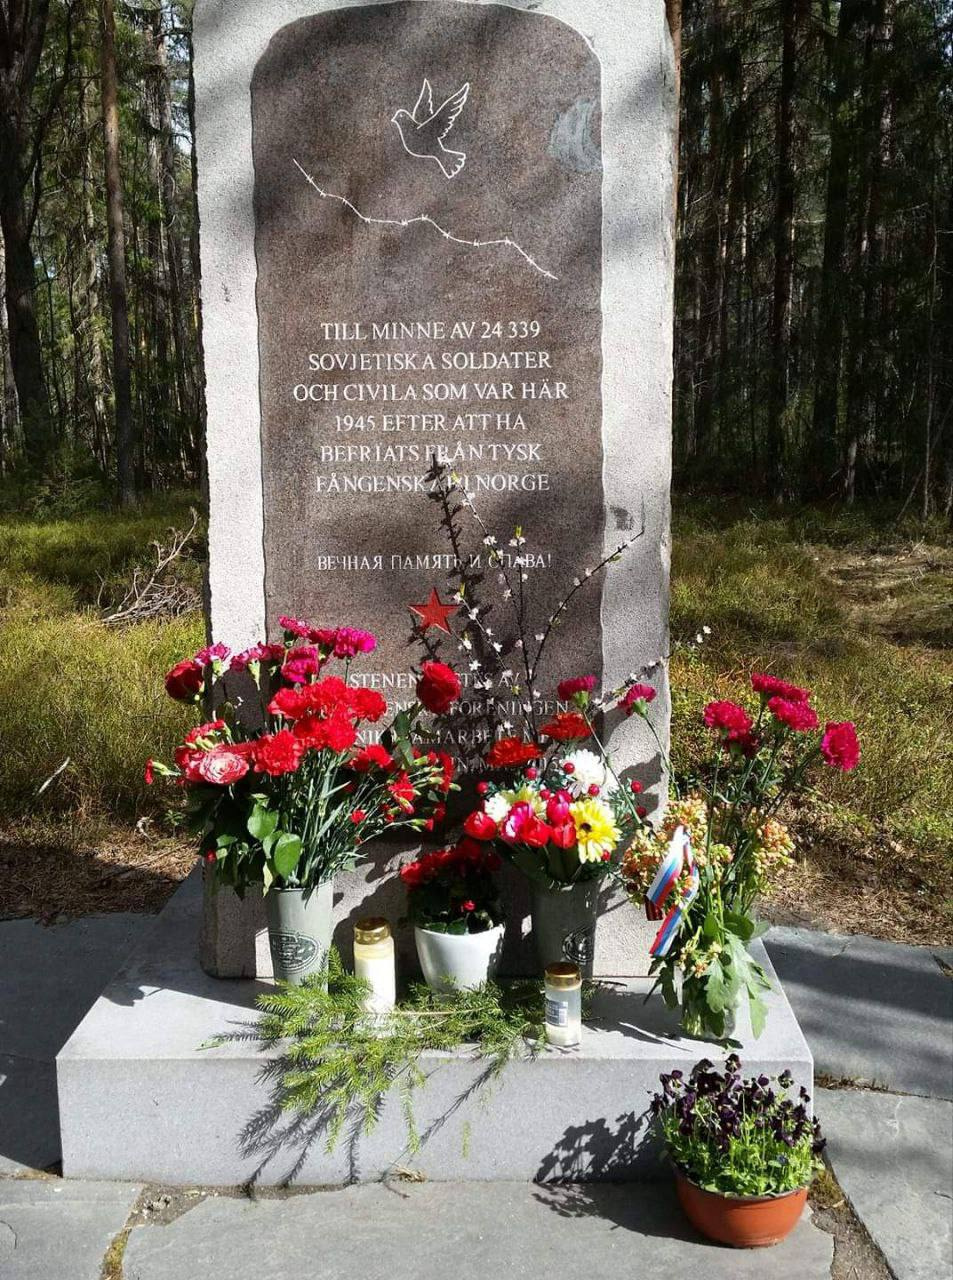 Посольство РФ сообщило об осквернении памятного камня советским солдатам в Швеции